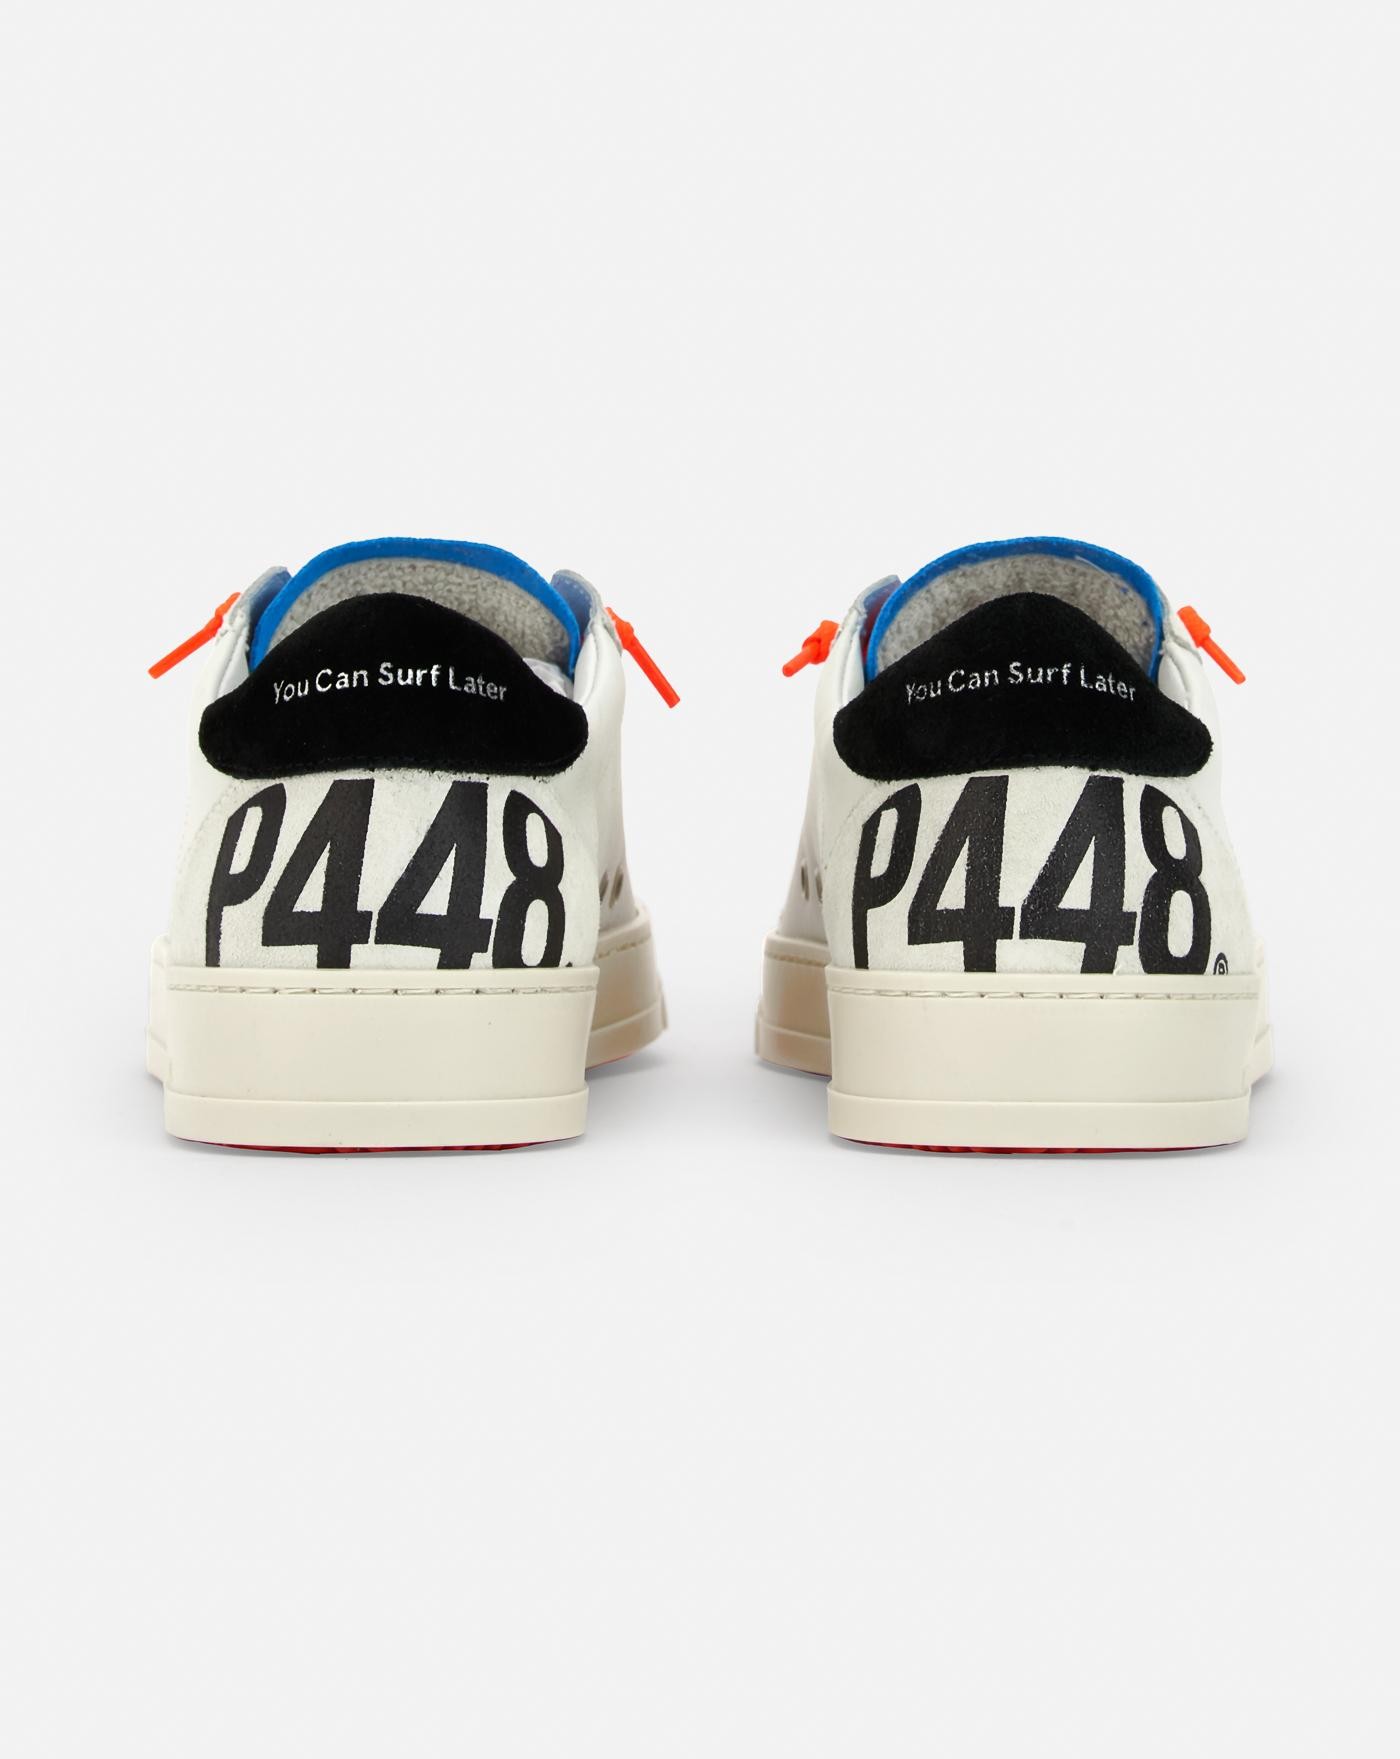 p448-zapatillas-jack-whi-neo-sneakers-white-orange-blancas-4